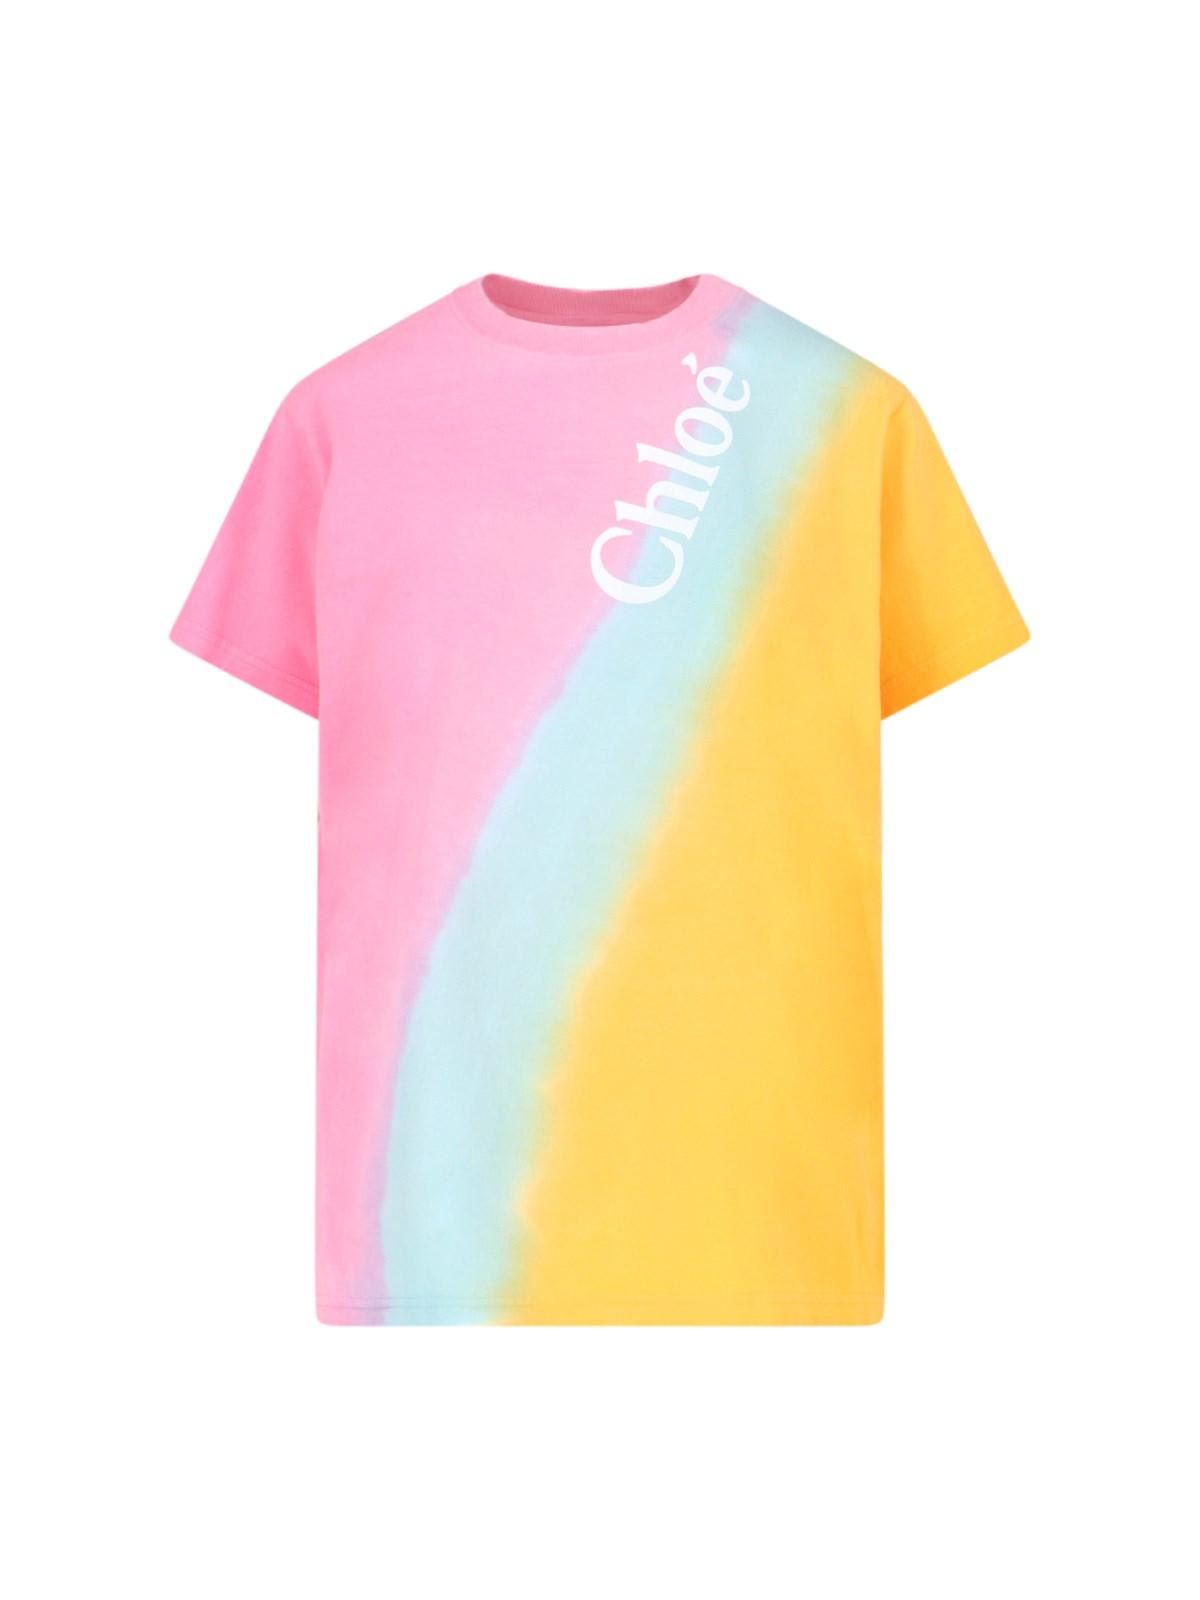 Chloé Tie-dye Effect T-shirt In Multi